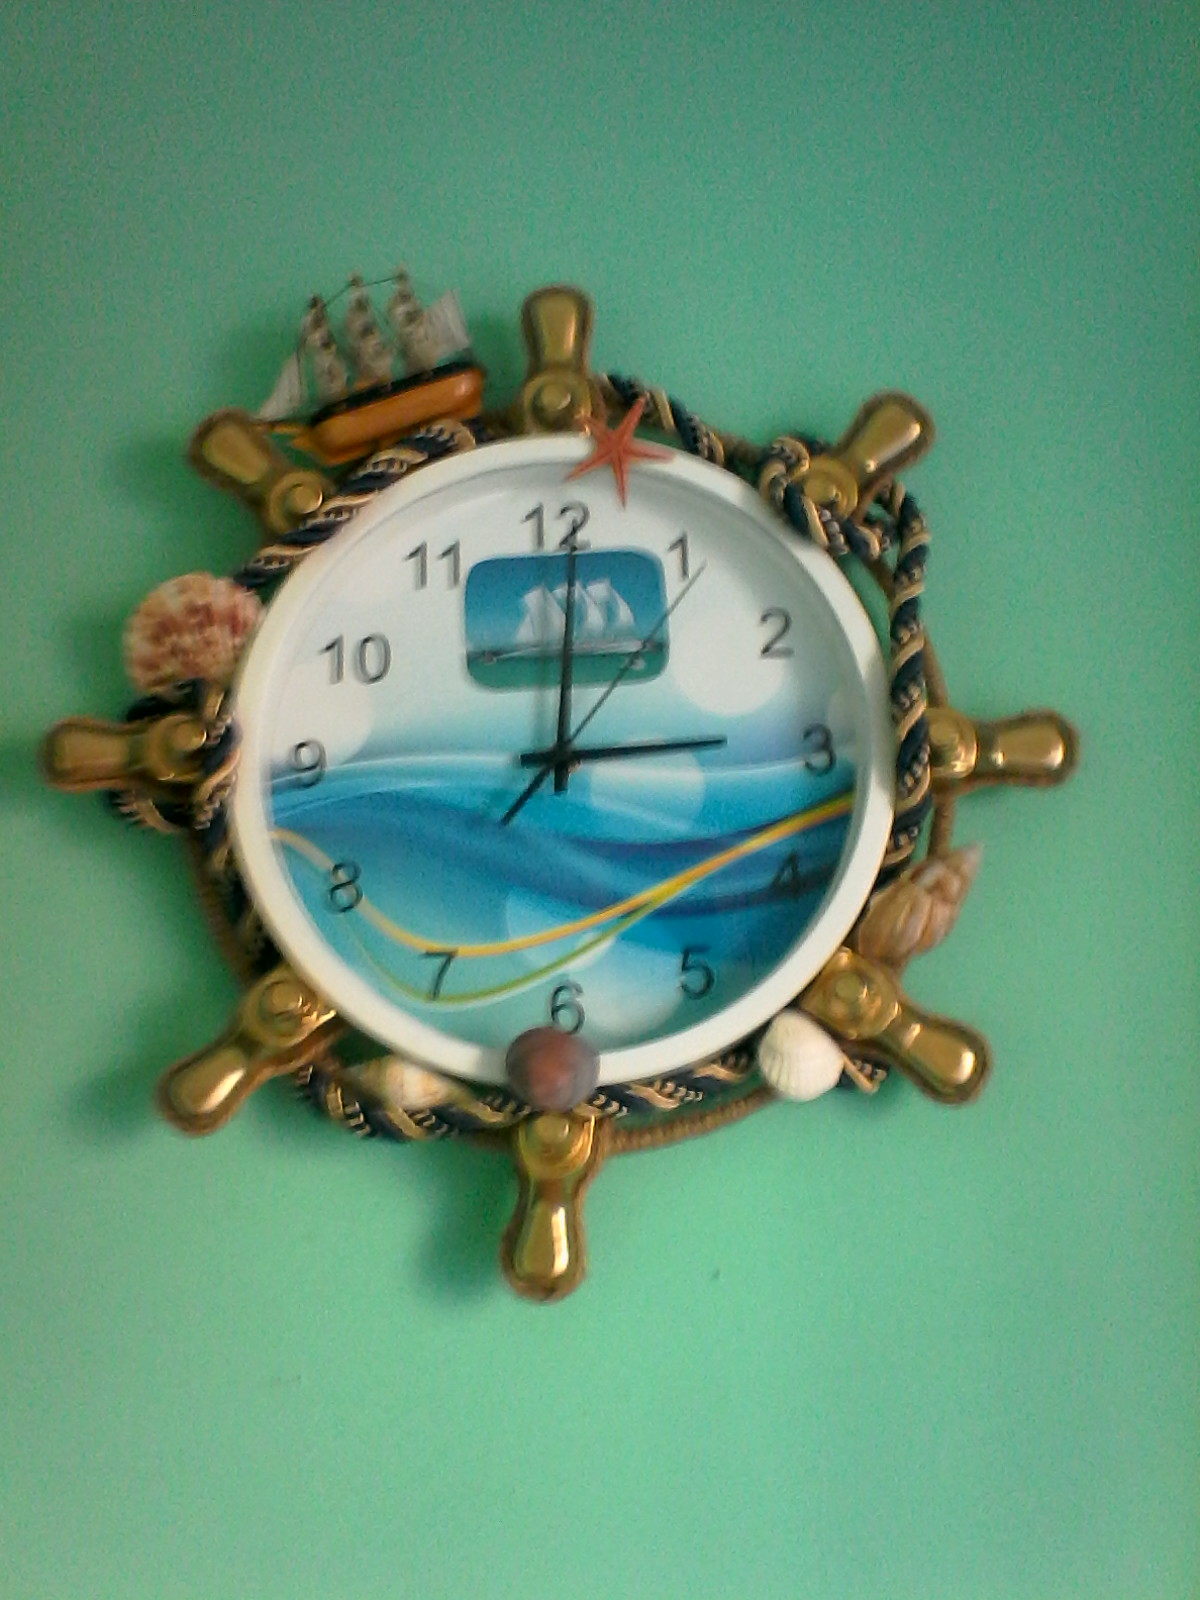 Морские часы настенные. Часы морская тематика. Часы в морском стиле настенные. Часы настенные морская тематика. Часы настенные "морские".